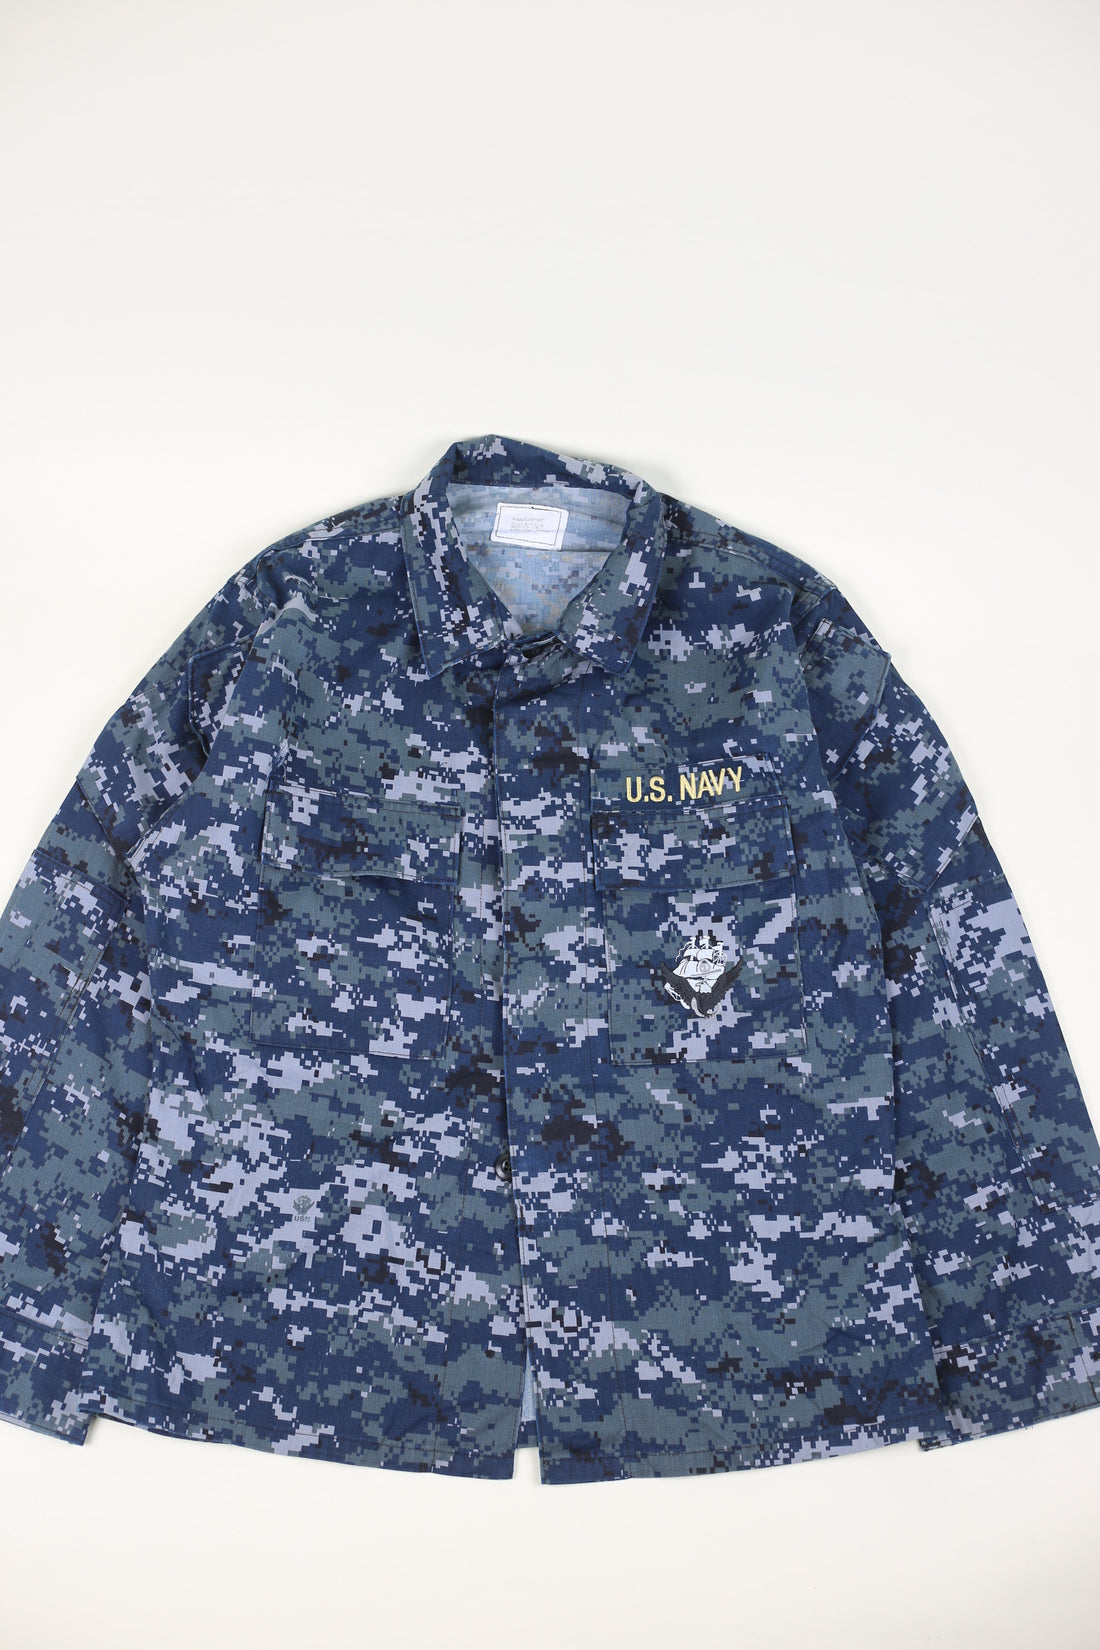 Marpat Us Navy Overshirt Shirt - S -